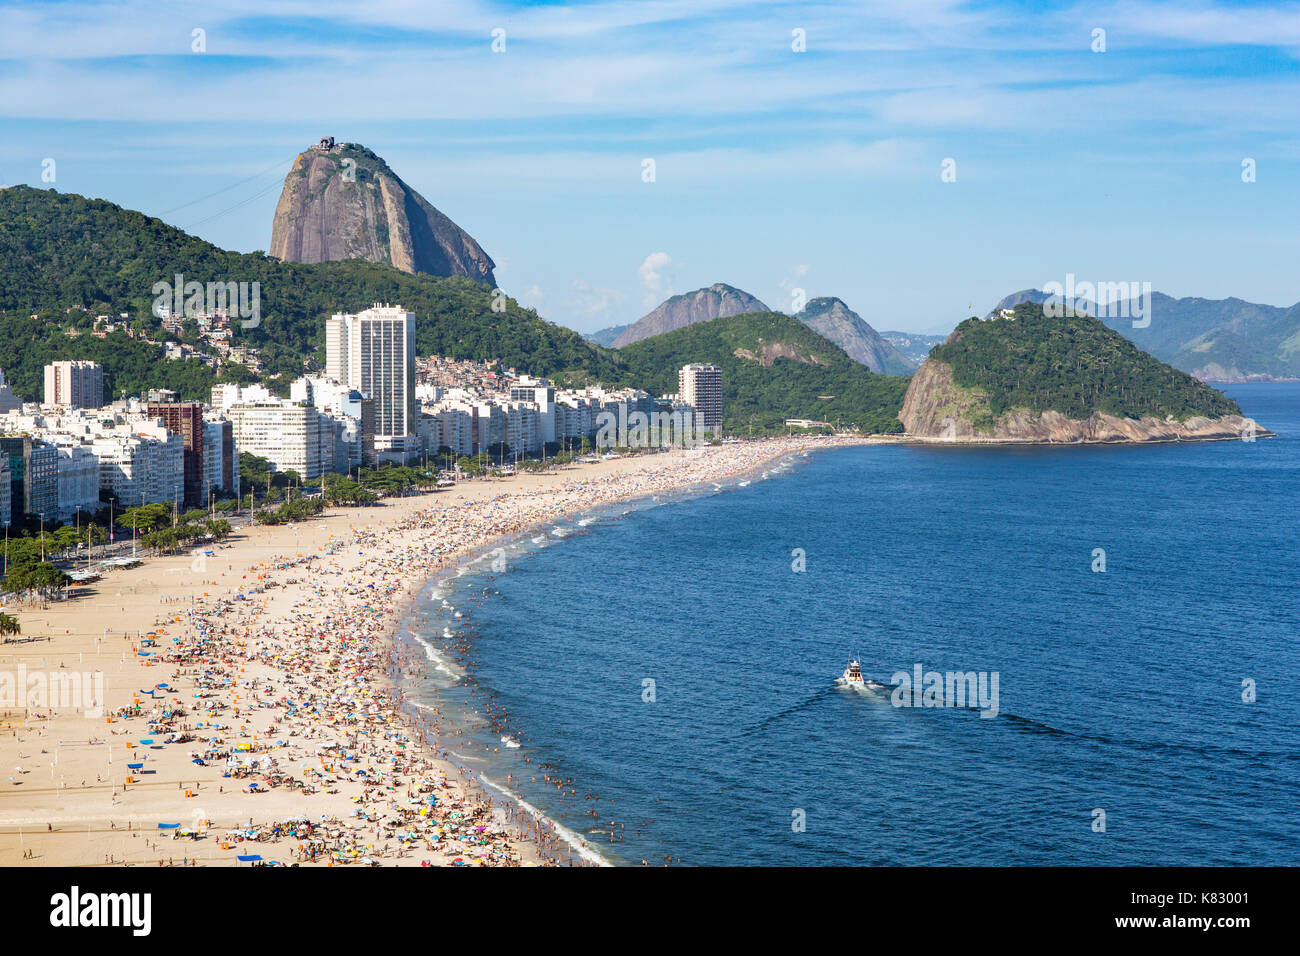 Copacabana beach and Sugar loaf, Rio de Janeiro, Brazil, South America Stock Photo